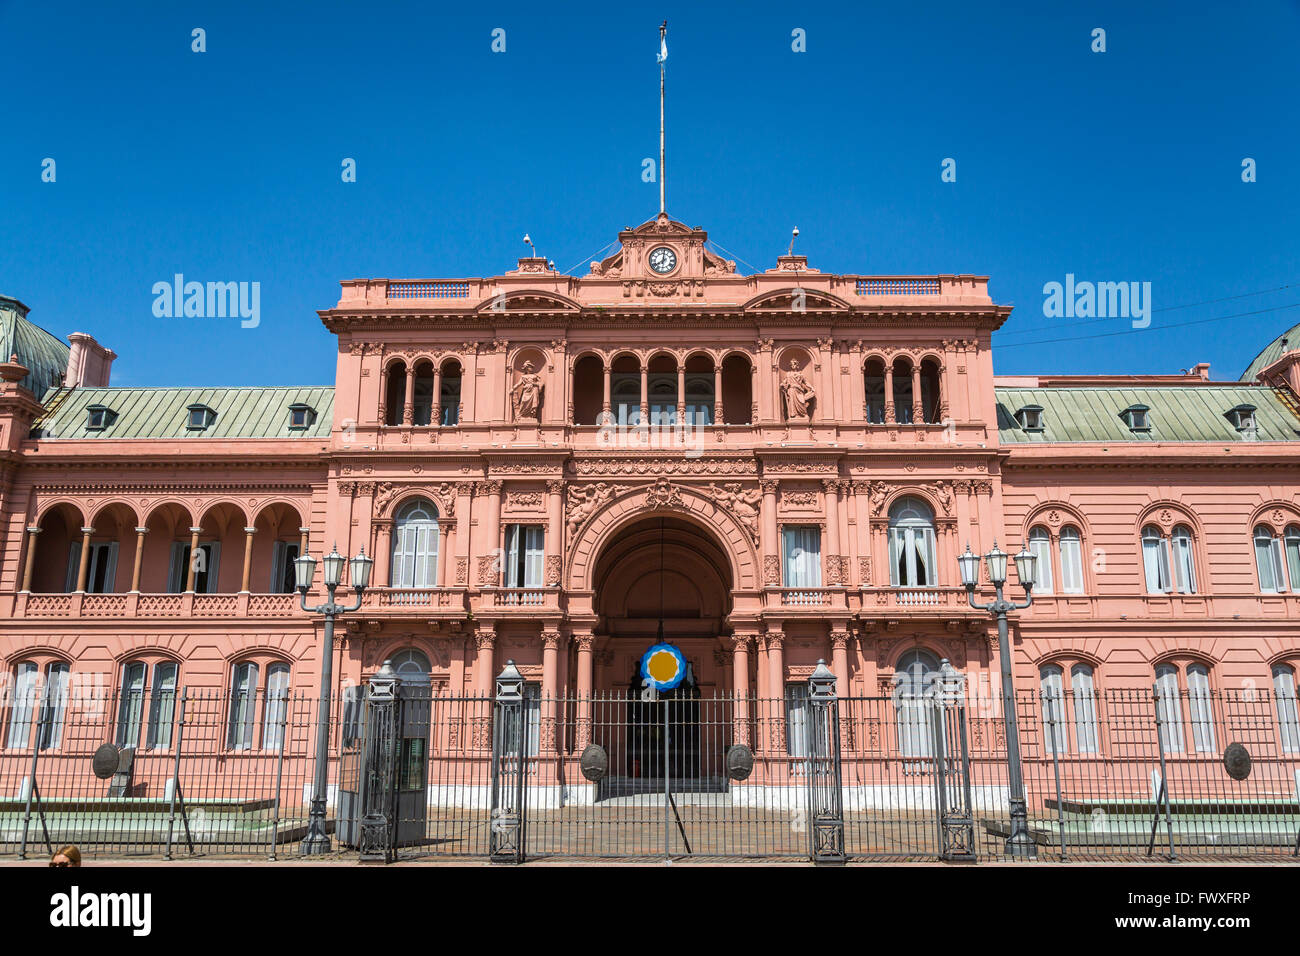 La Maison Rose, la demeure du président de l'Argentine à Buenos Aires, Argentine, Amérique du Sud. Banque D'Images